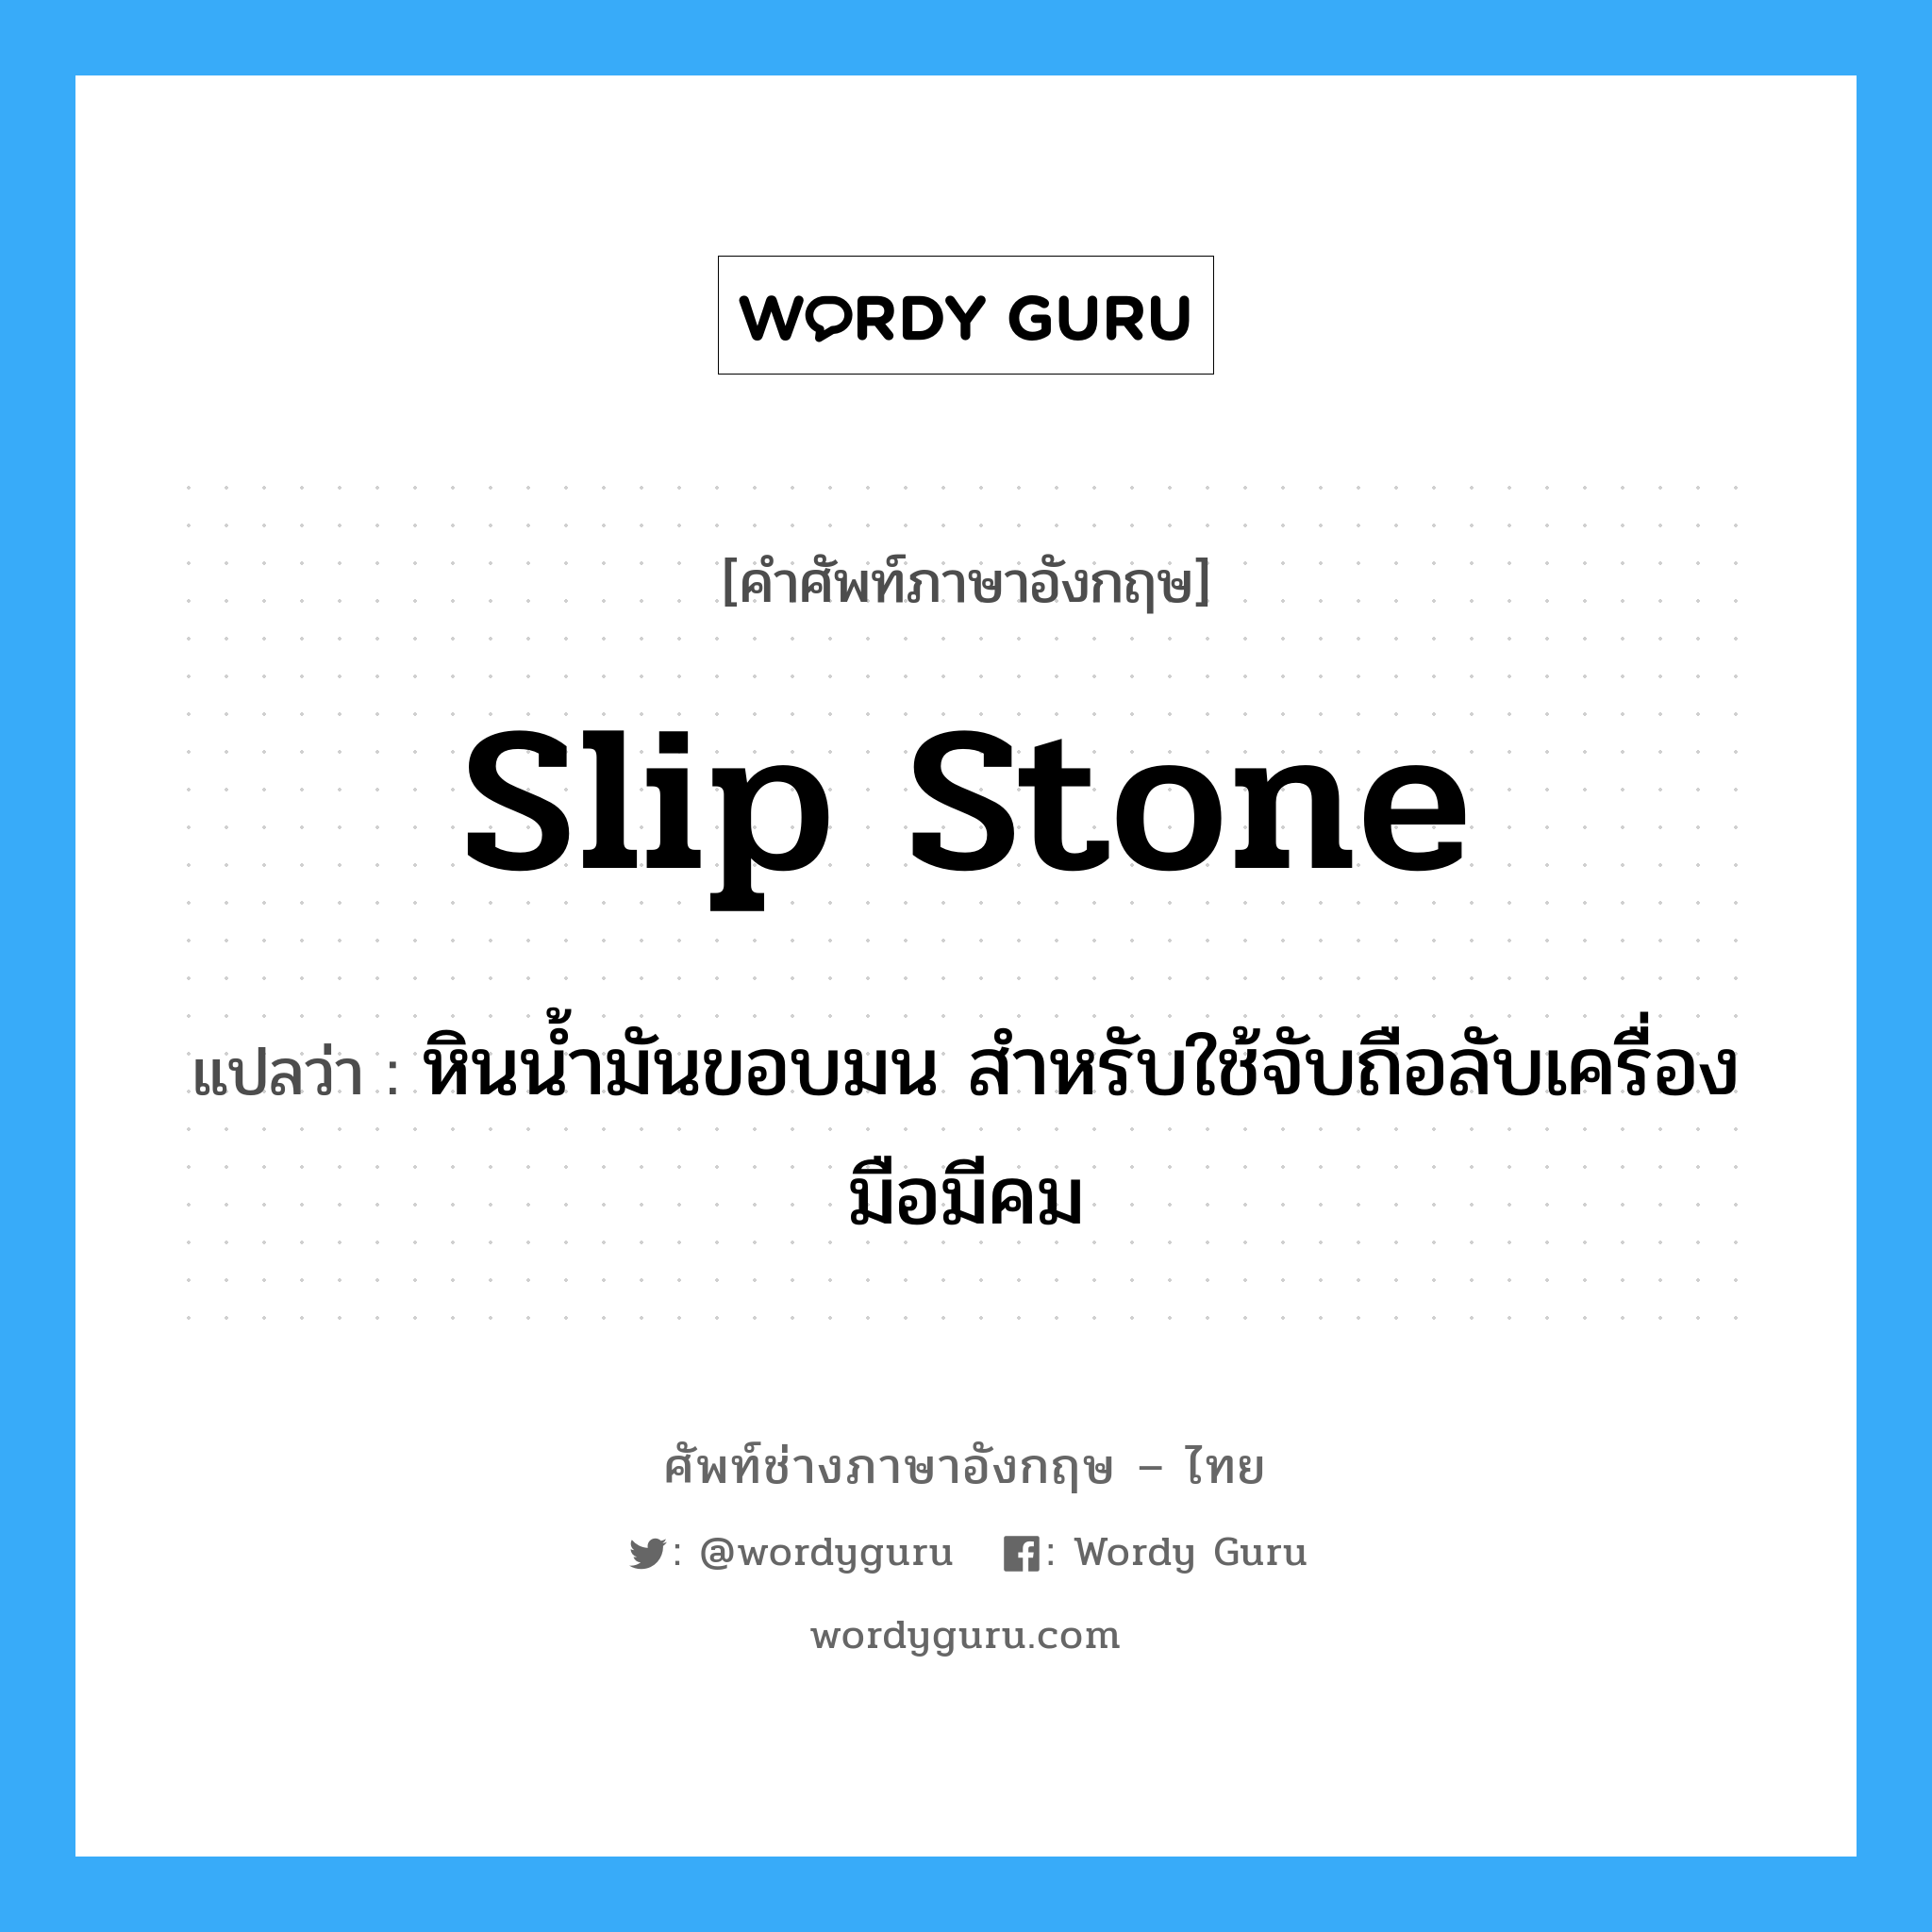 slip stone แปลว่า?, คำศัพท์ช่างภาษาอังกฤษ - ไทย slip stone คำศัพท์ภาษาอังกฤษ slip stone แปลว่า หินน้ำมันขอบมน สำหรับใช้จับถือลับเครื่องมือมีคม